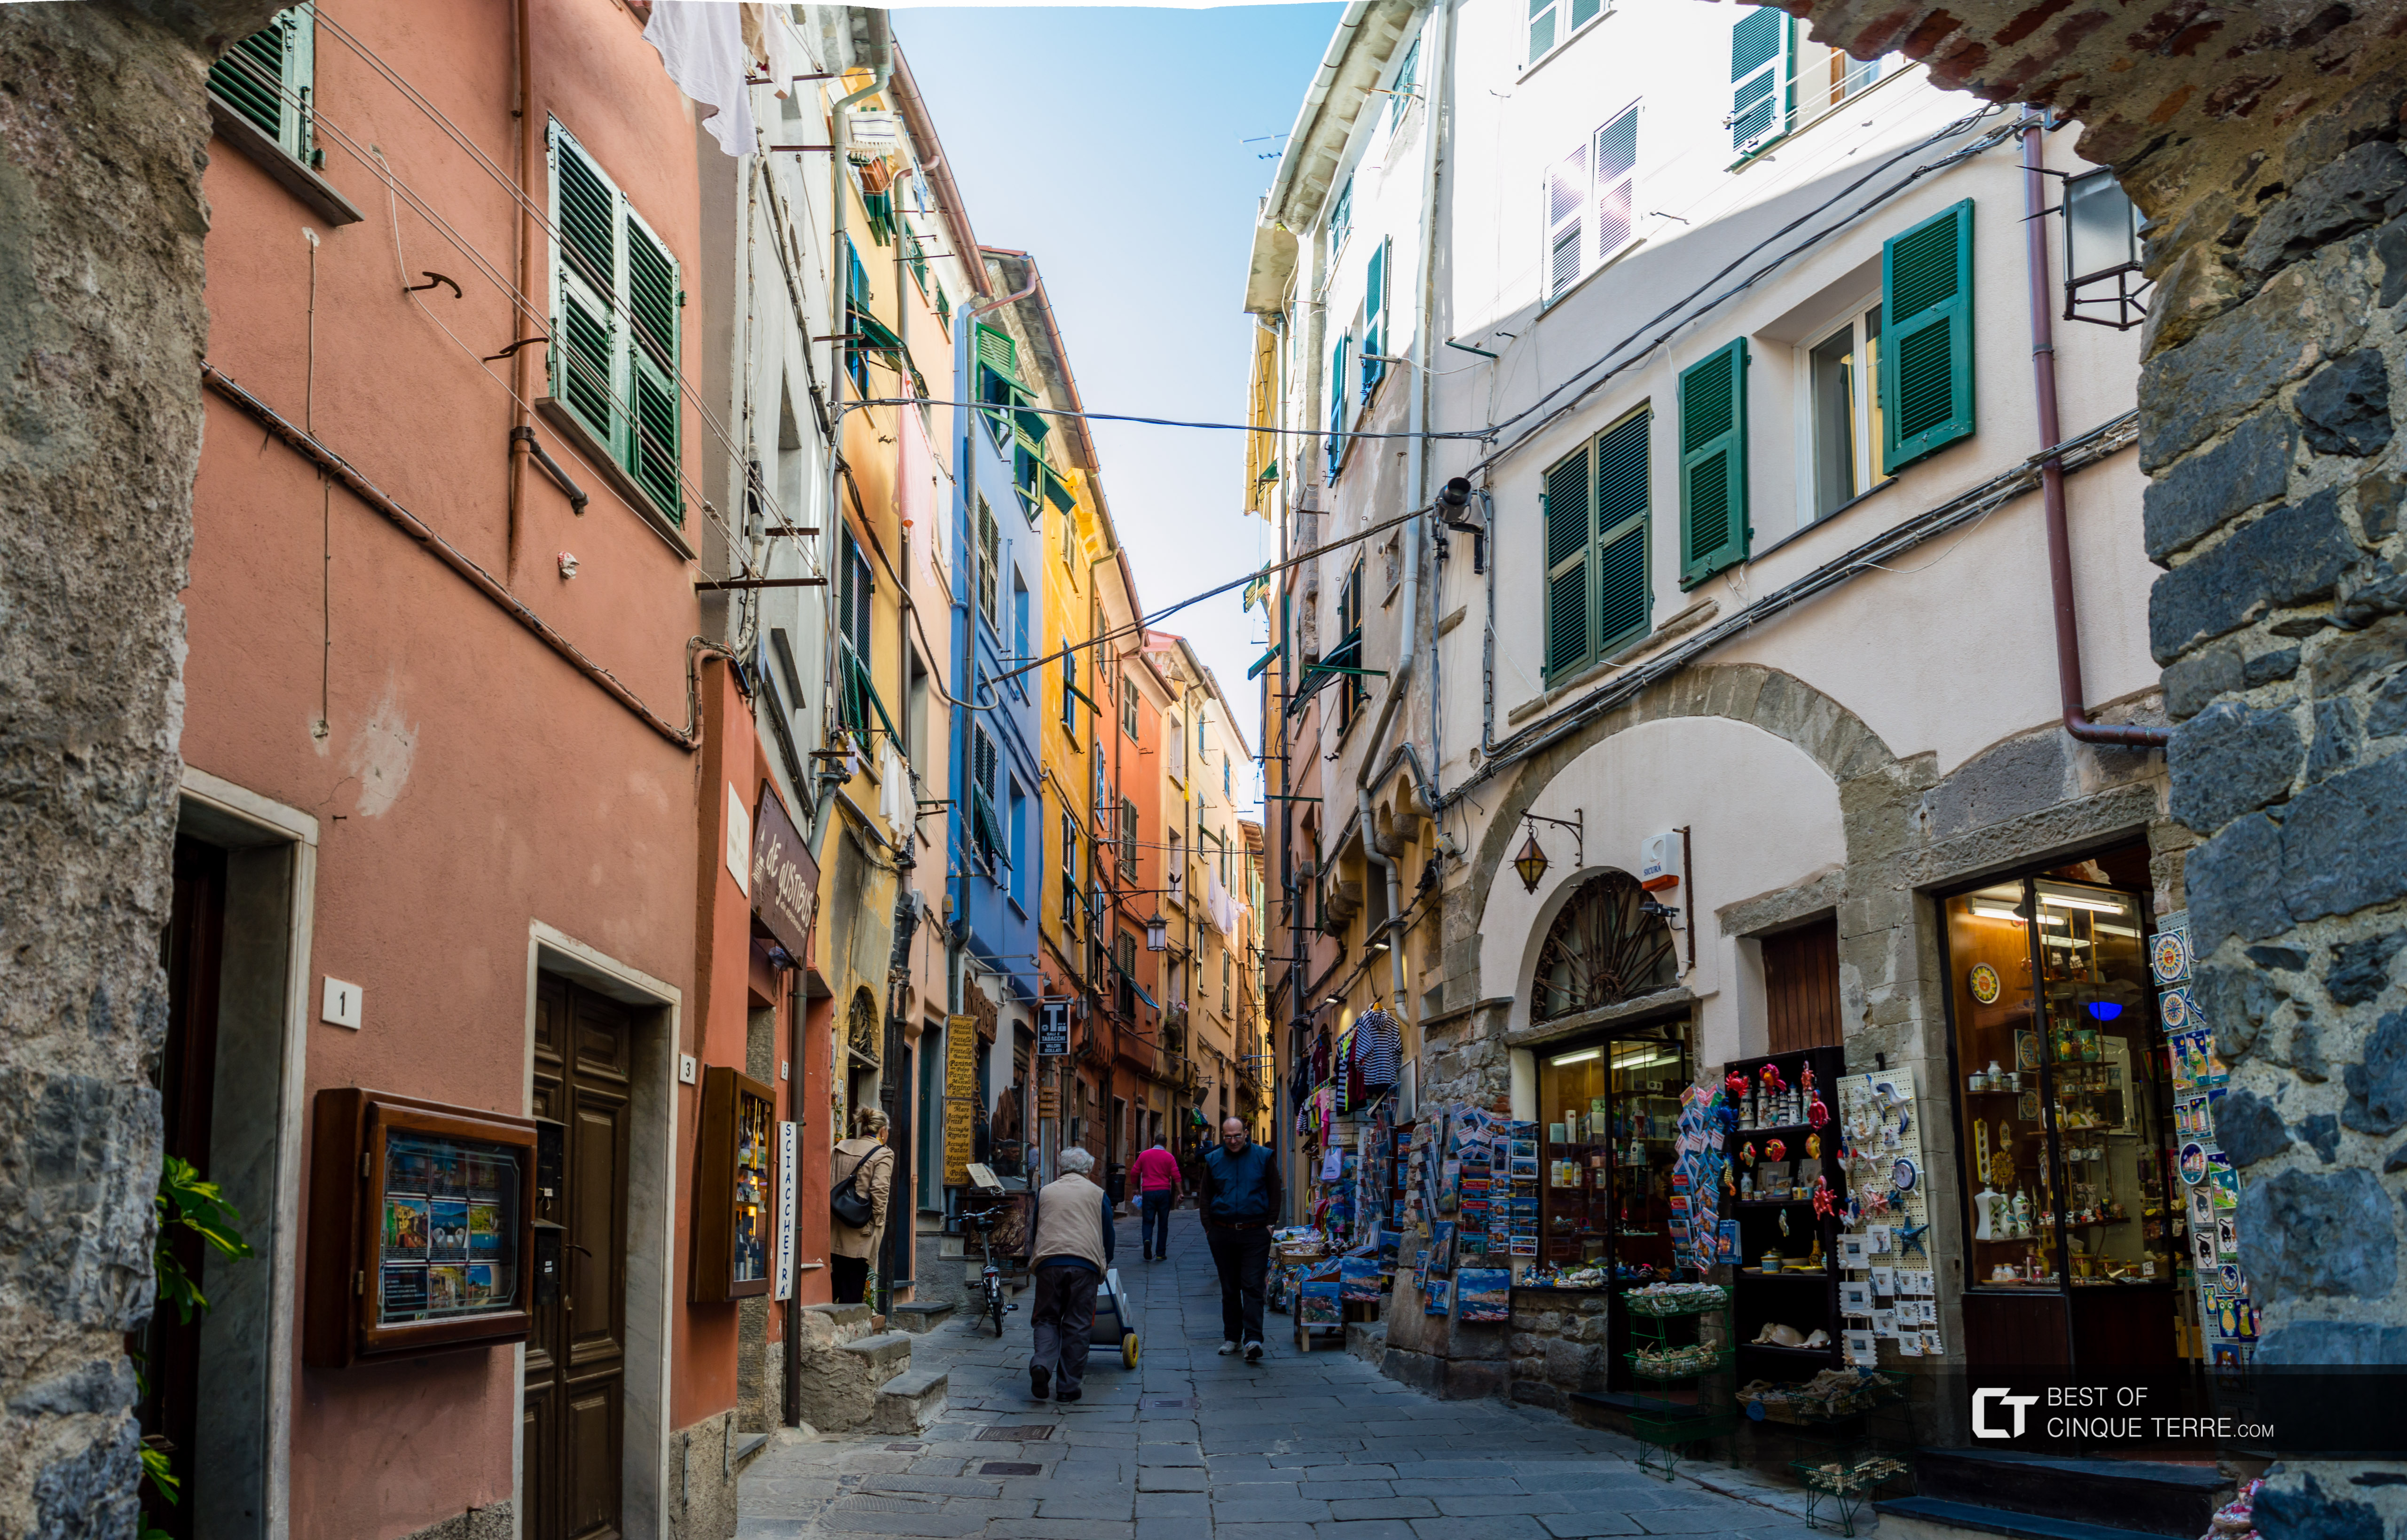 La rue principale, Portovenere, Italie